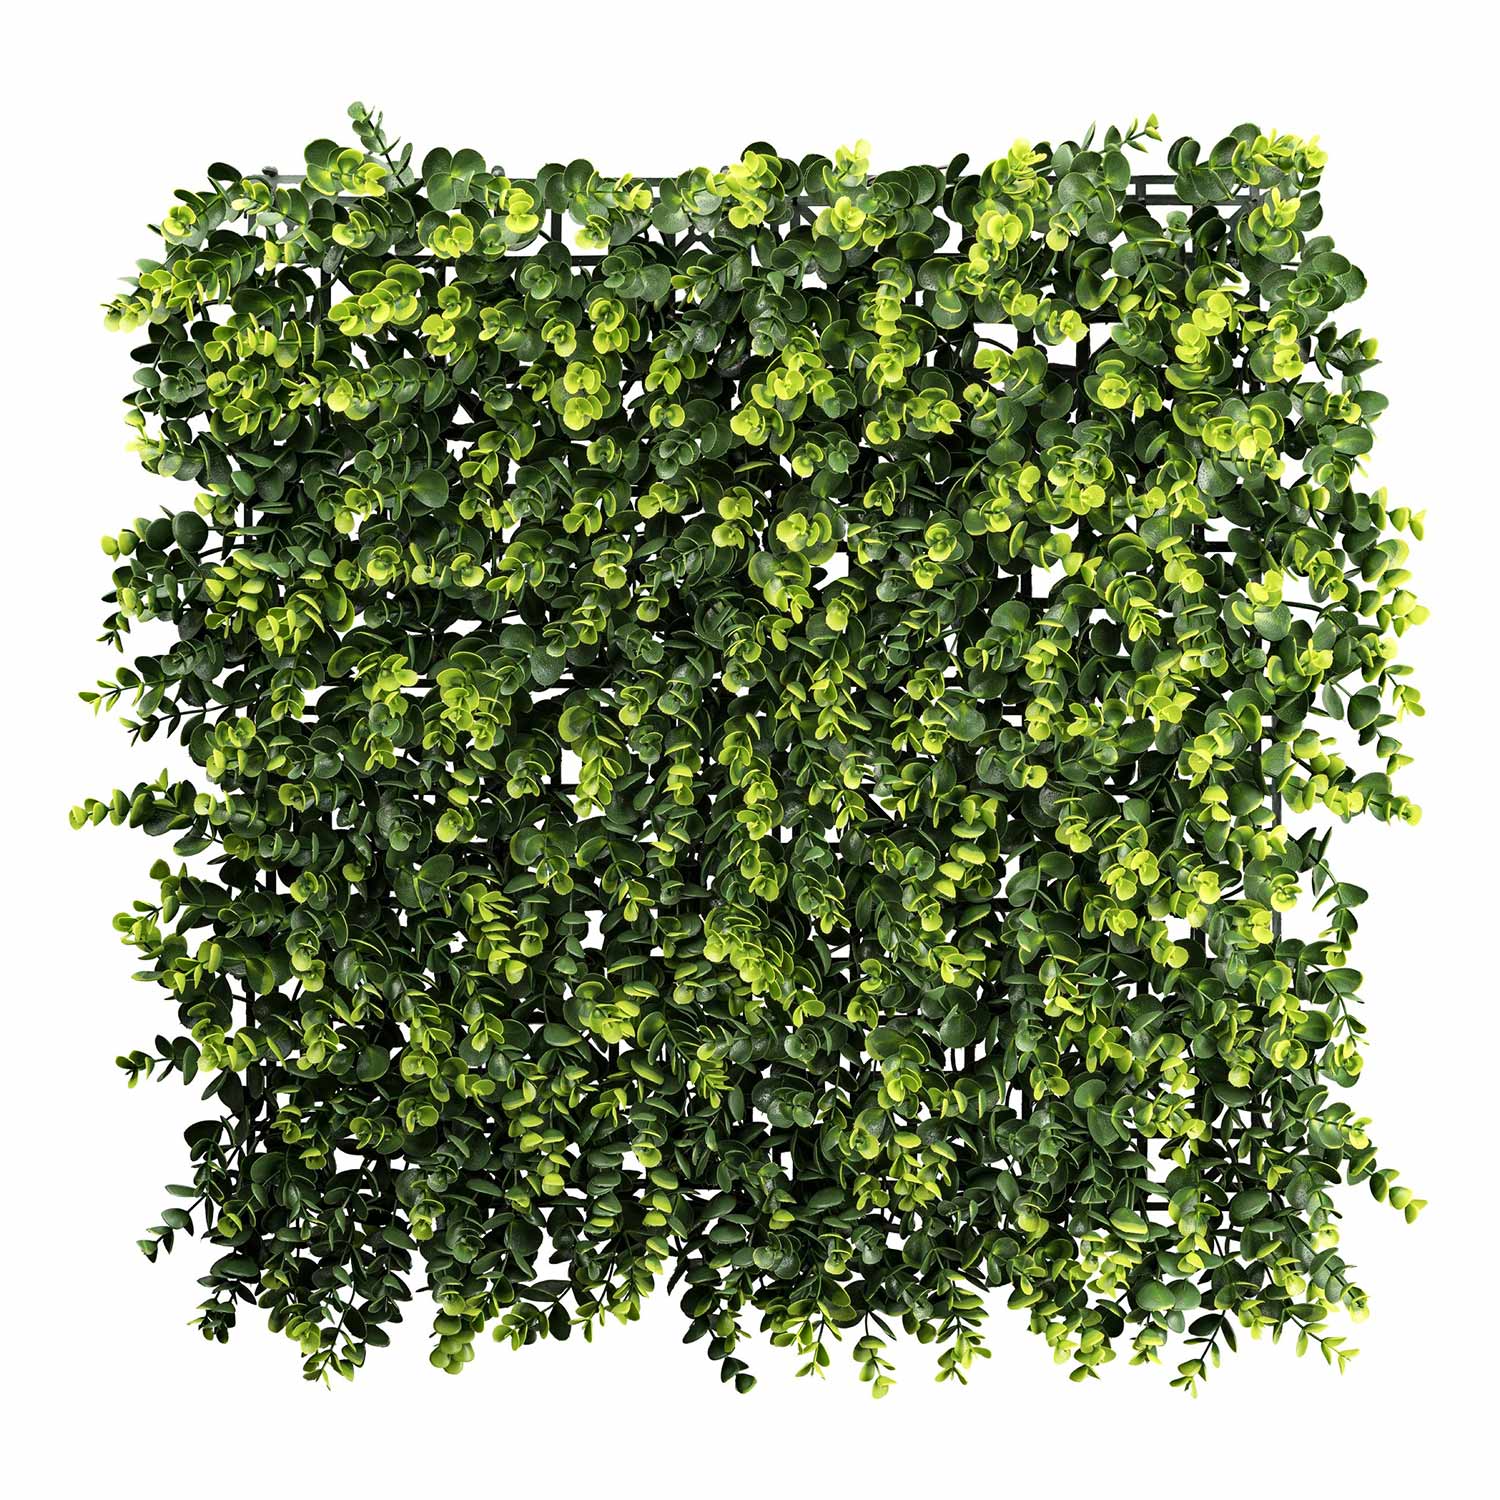 Mű eukaliptusz levelekből készült, 50 cm hosszú és 50 cm széles, mesterséges növényfal panel.